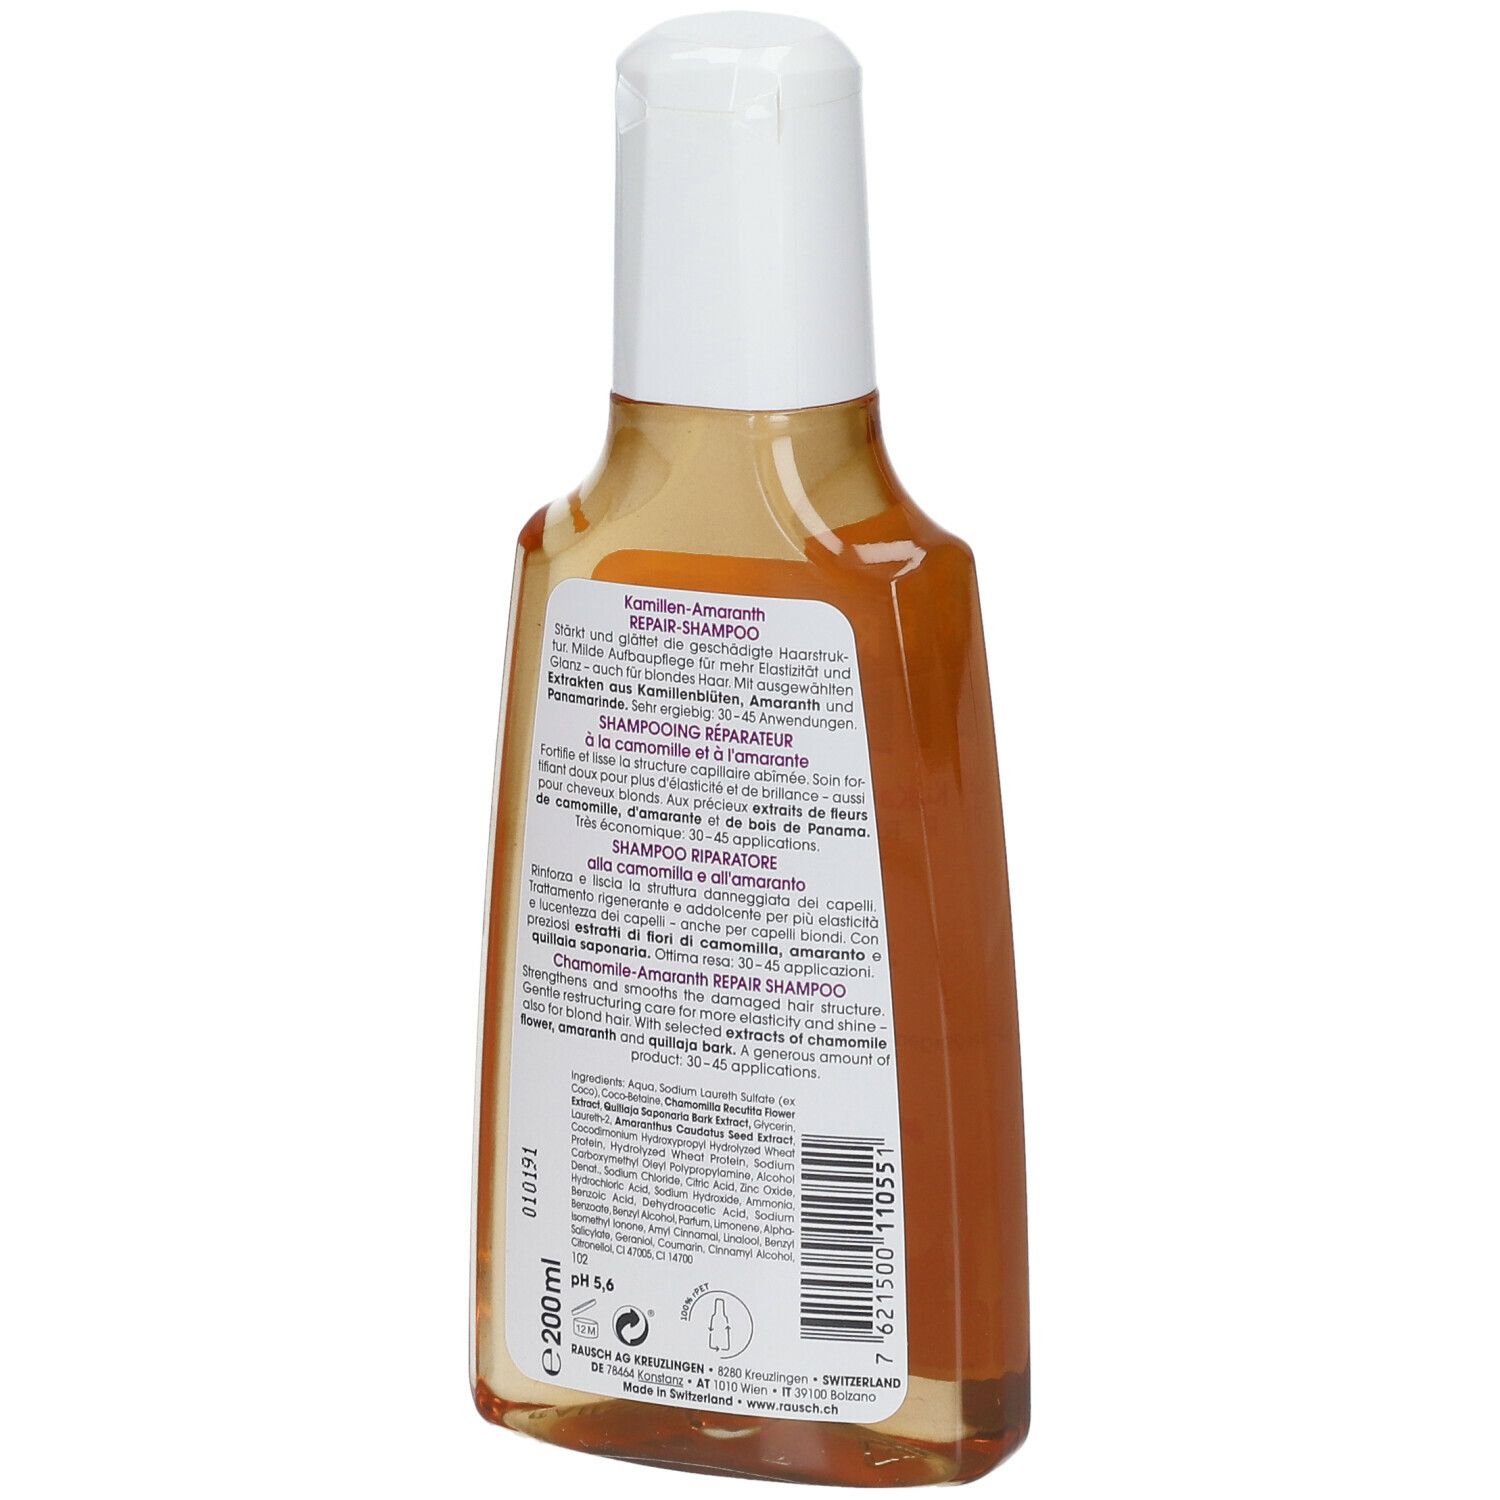 RAUSCH Kamillen-Amaranth Repair-Shampoo